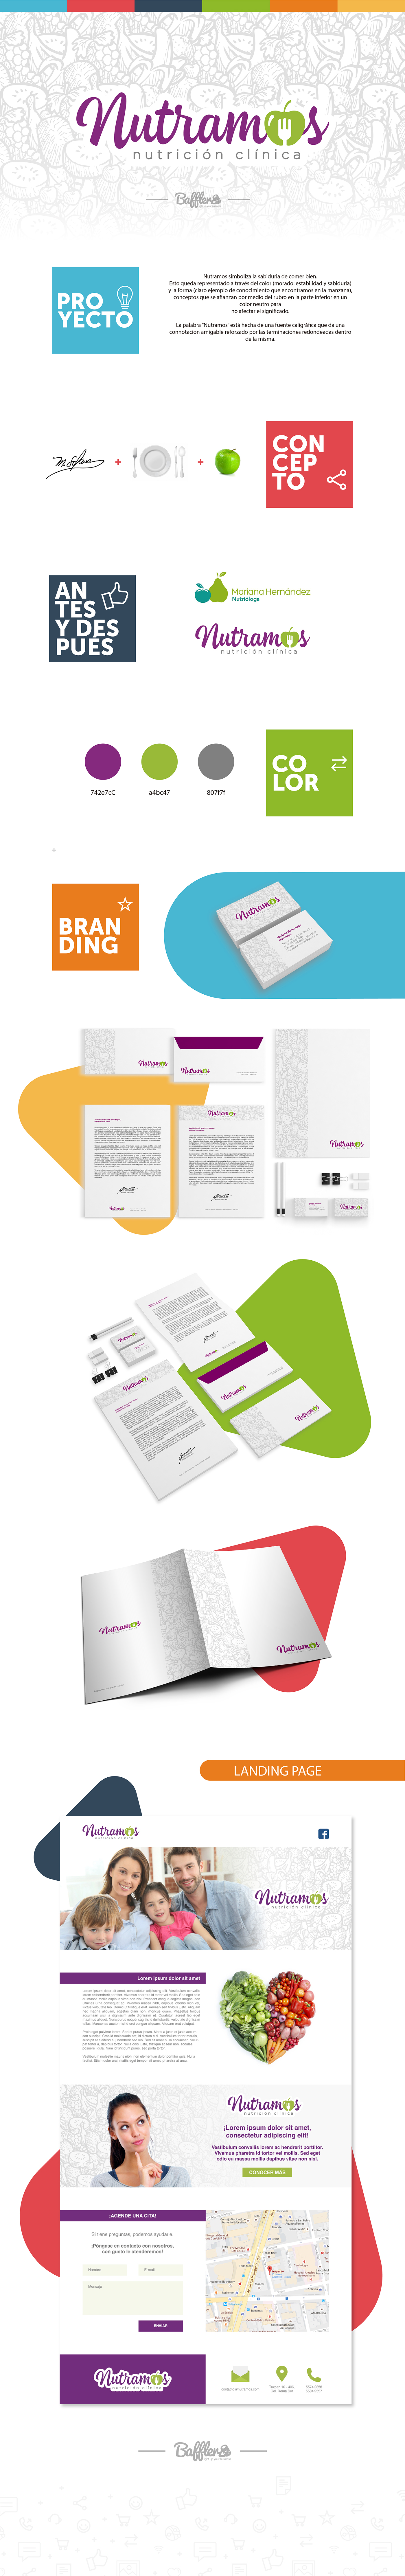 desarrollo de marca branding  Diseño web Logotipo Papeleria minisitio